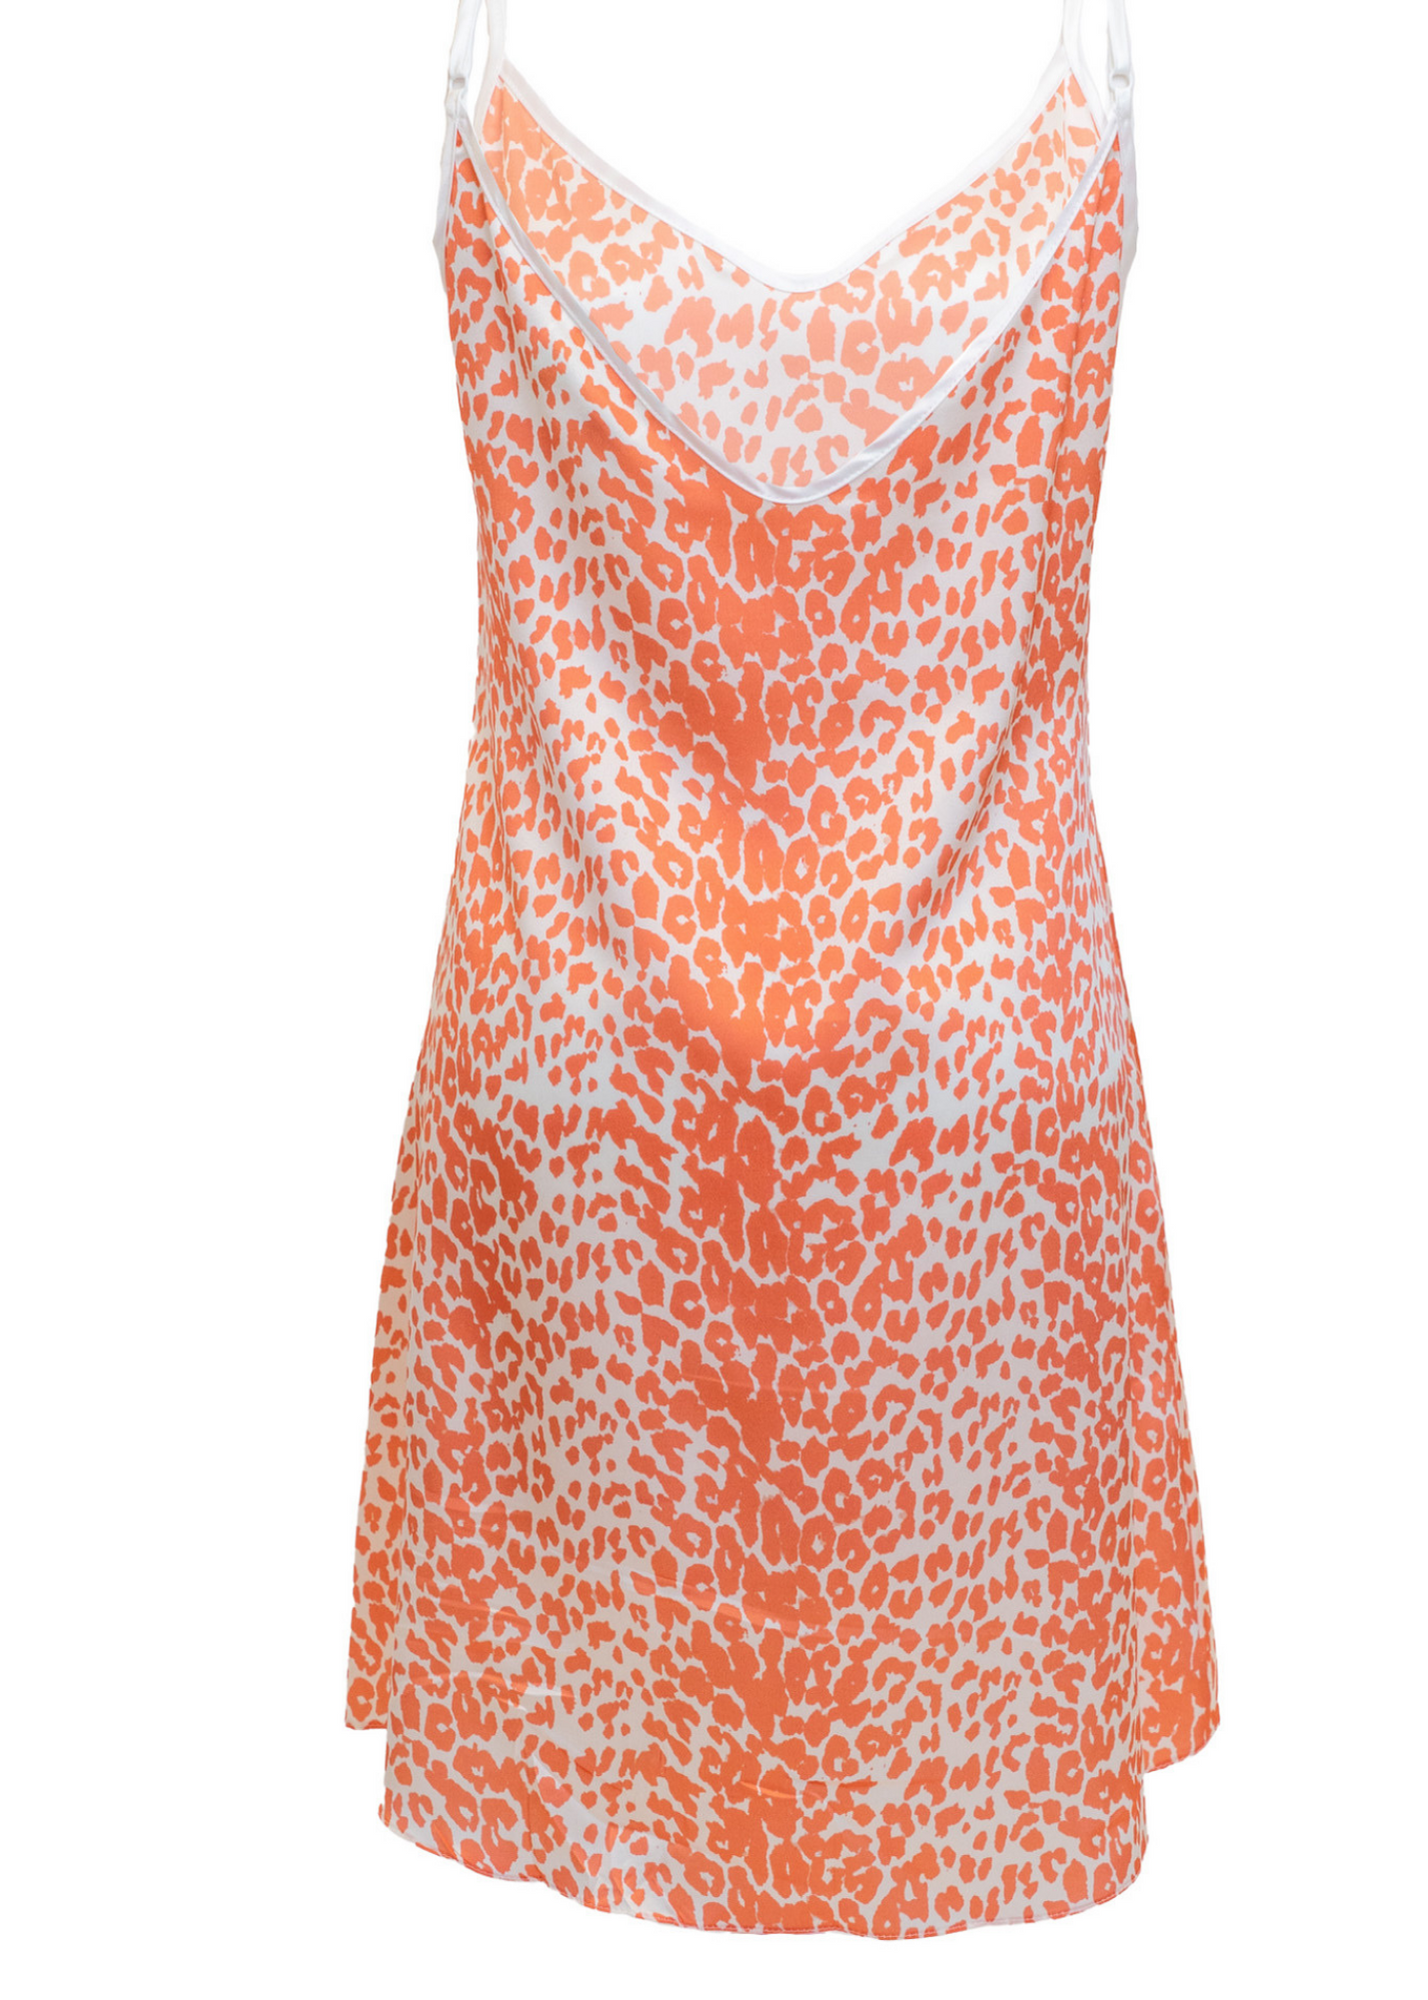 #14 Coral Leopard Print Silk Slip Mini Dress - MEDIUM